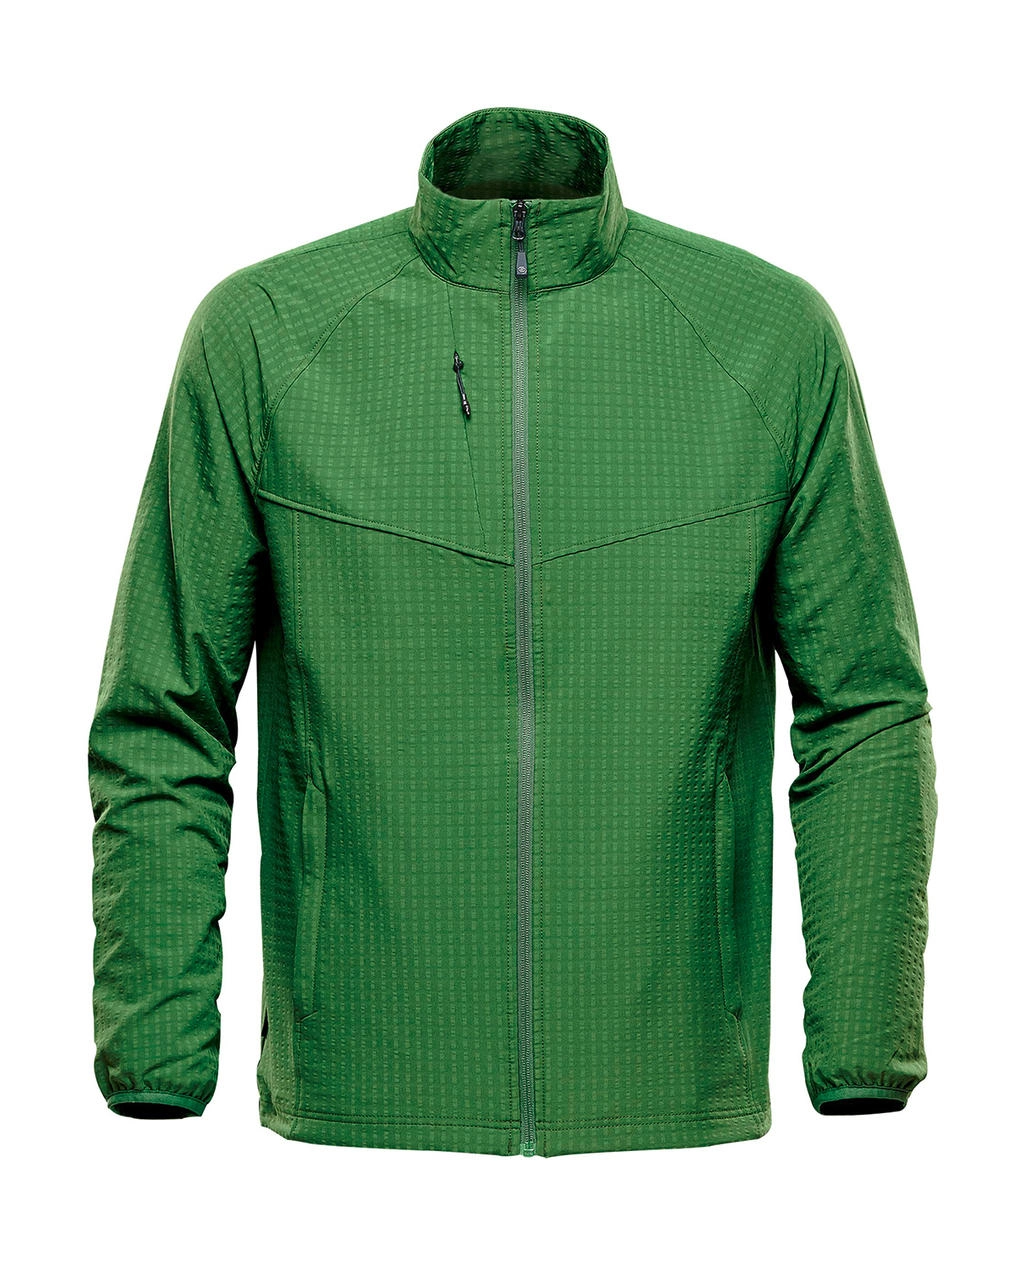 Kyoto Jacket zum Besticken und Bedrucken in der Farbe Garden Green mit Ihren Logo, Schriftzug oder Motiv.